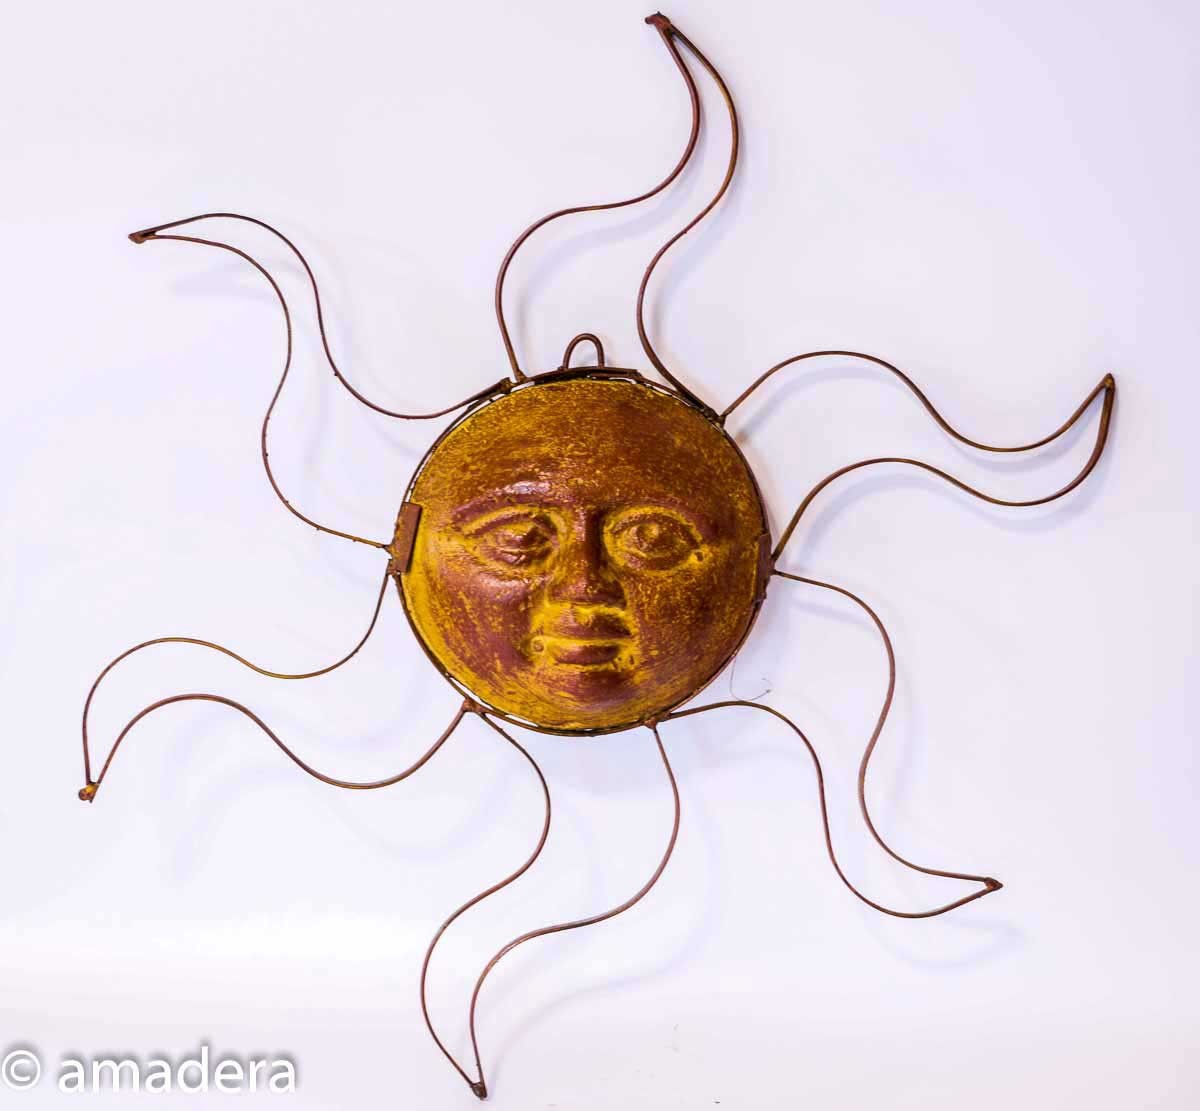 Optez pour une soleil déco mural, terre cuite et métal - Amadera Taille 40  cm de diamètre